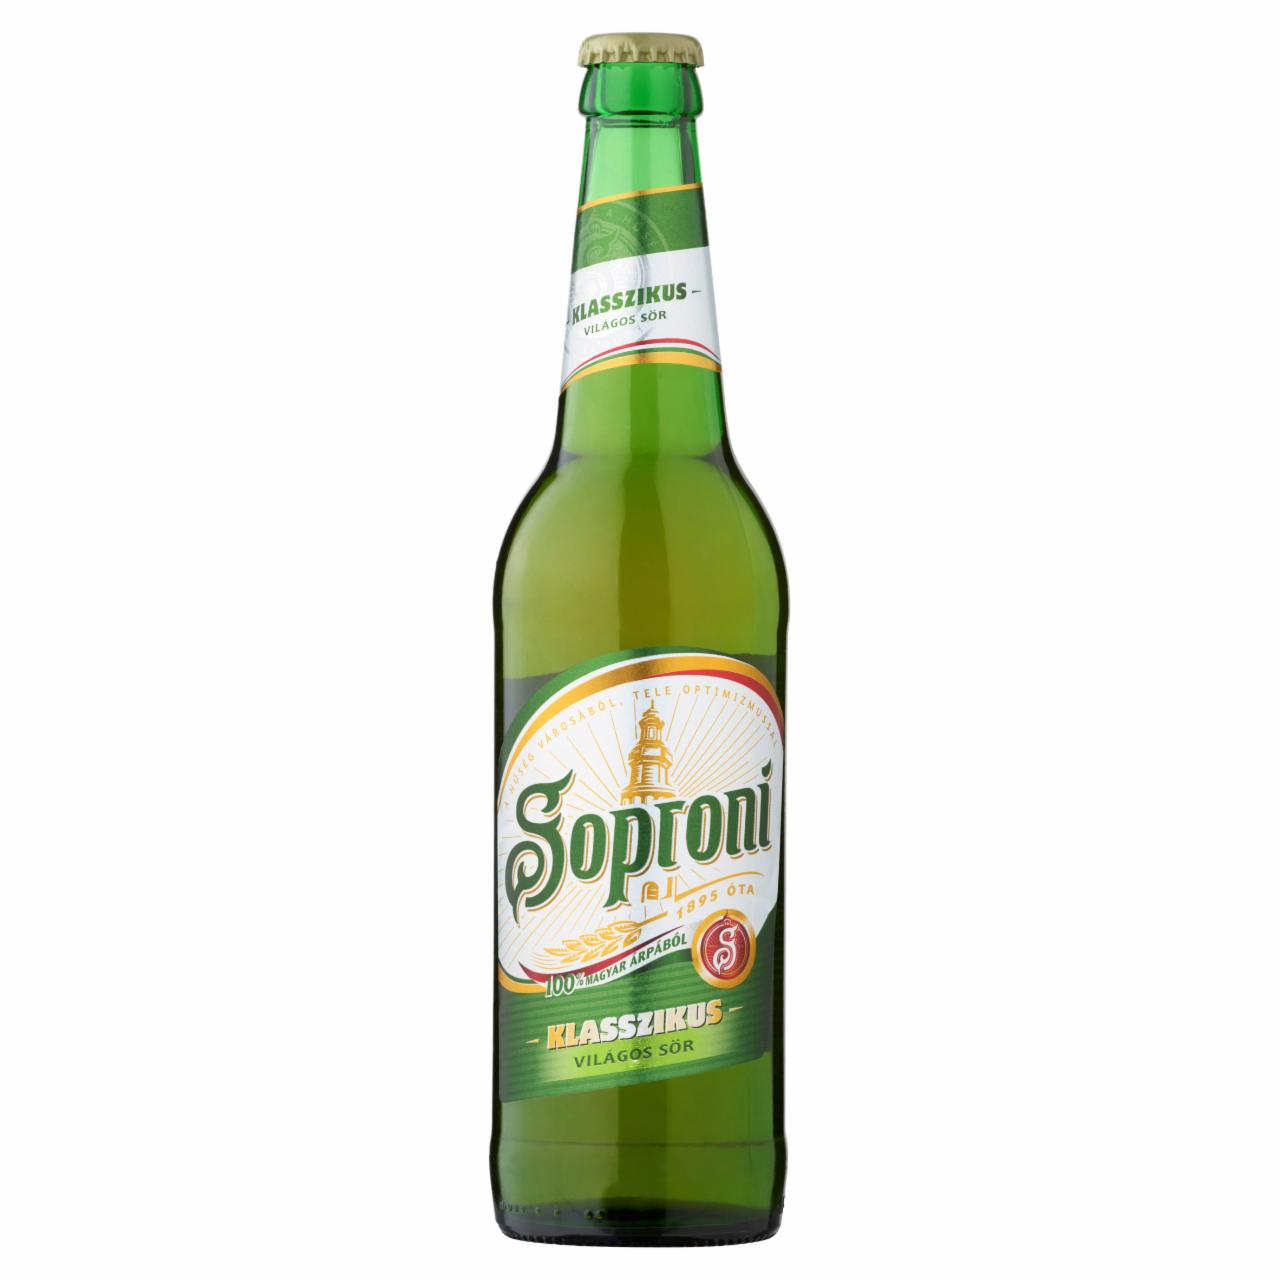 Képek - Soproni Klasszikus világos sör 4,5% 0,5 l üveg